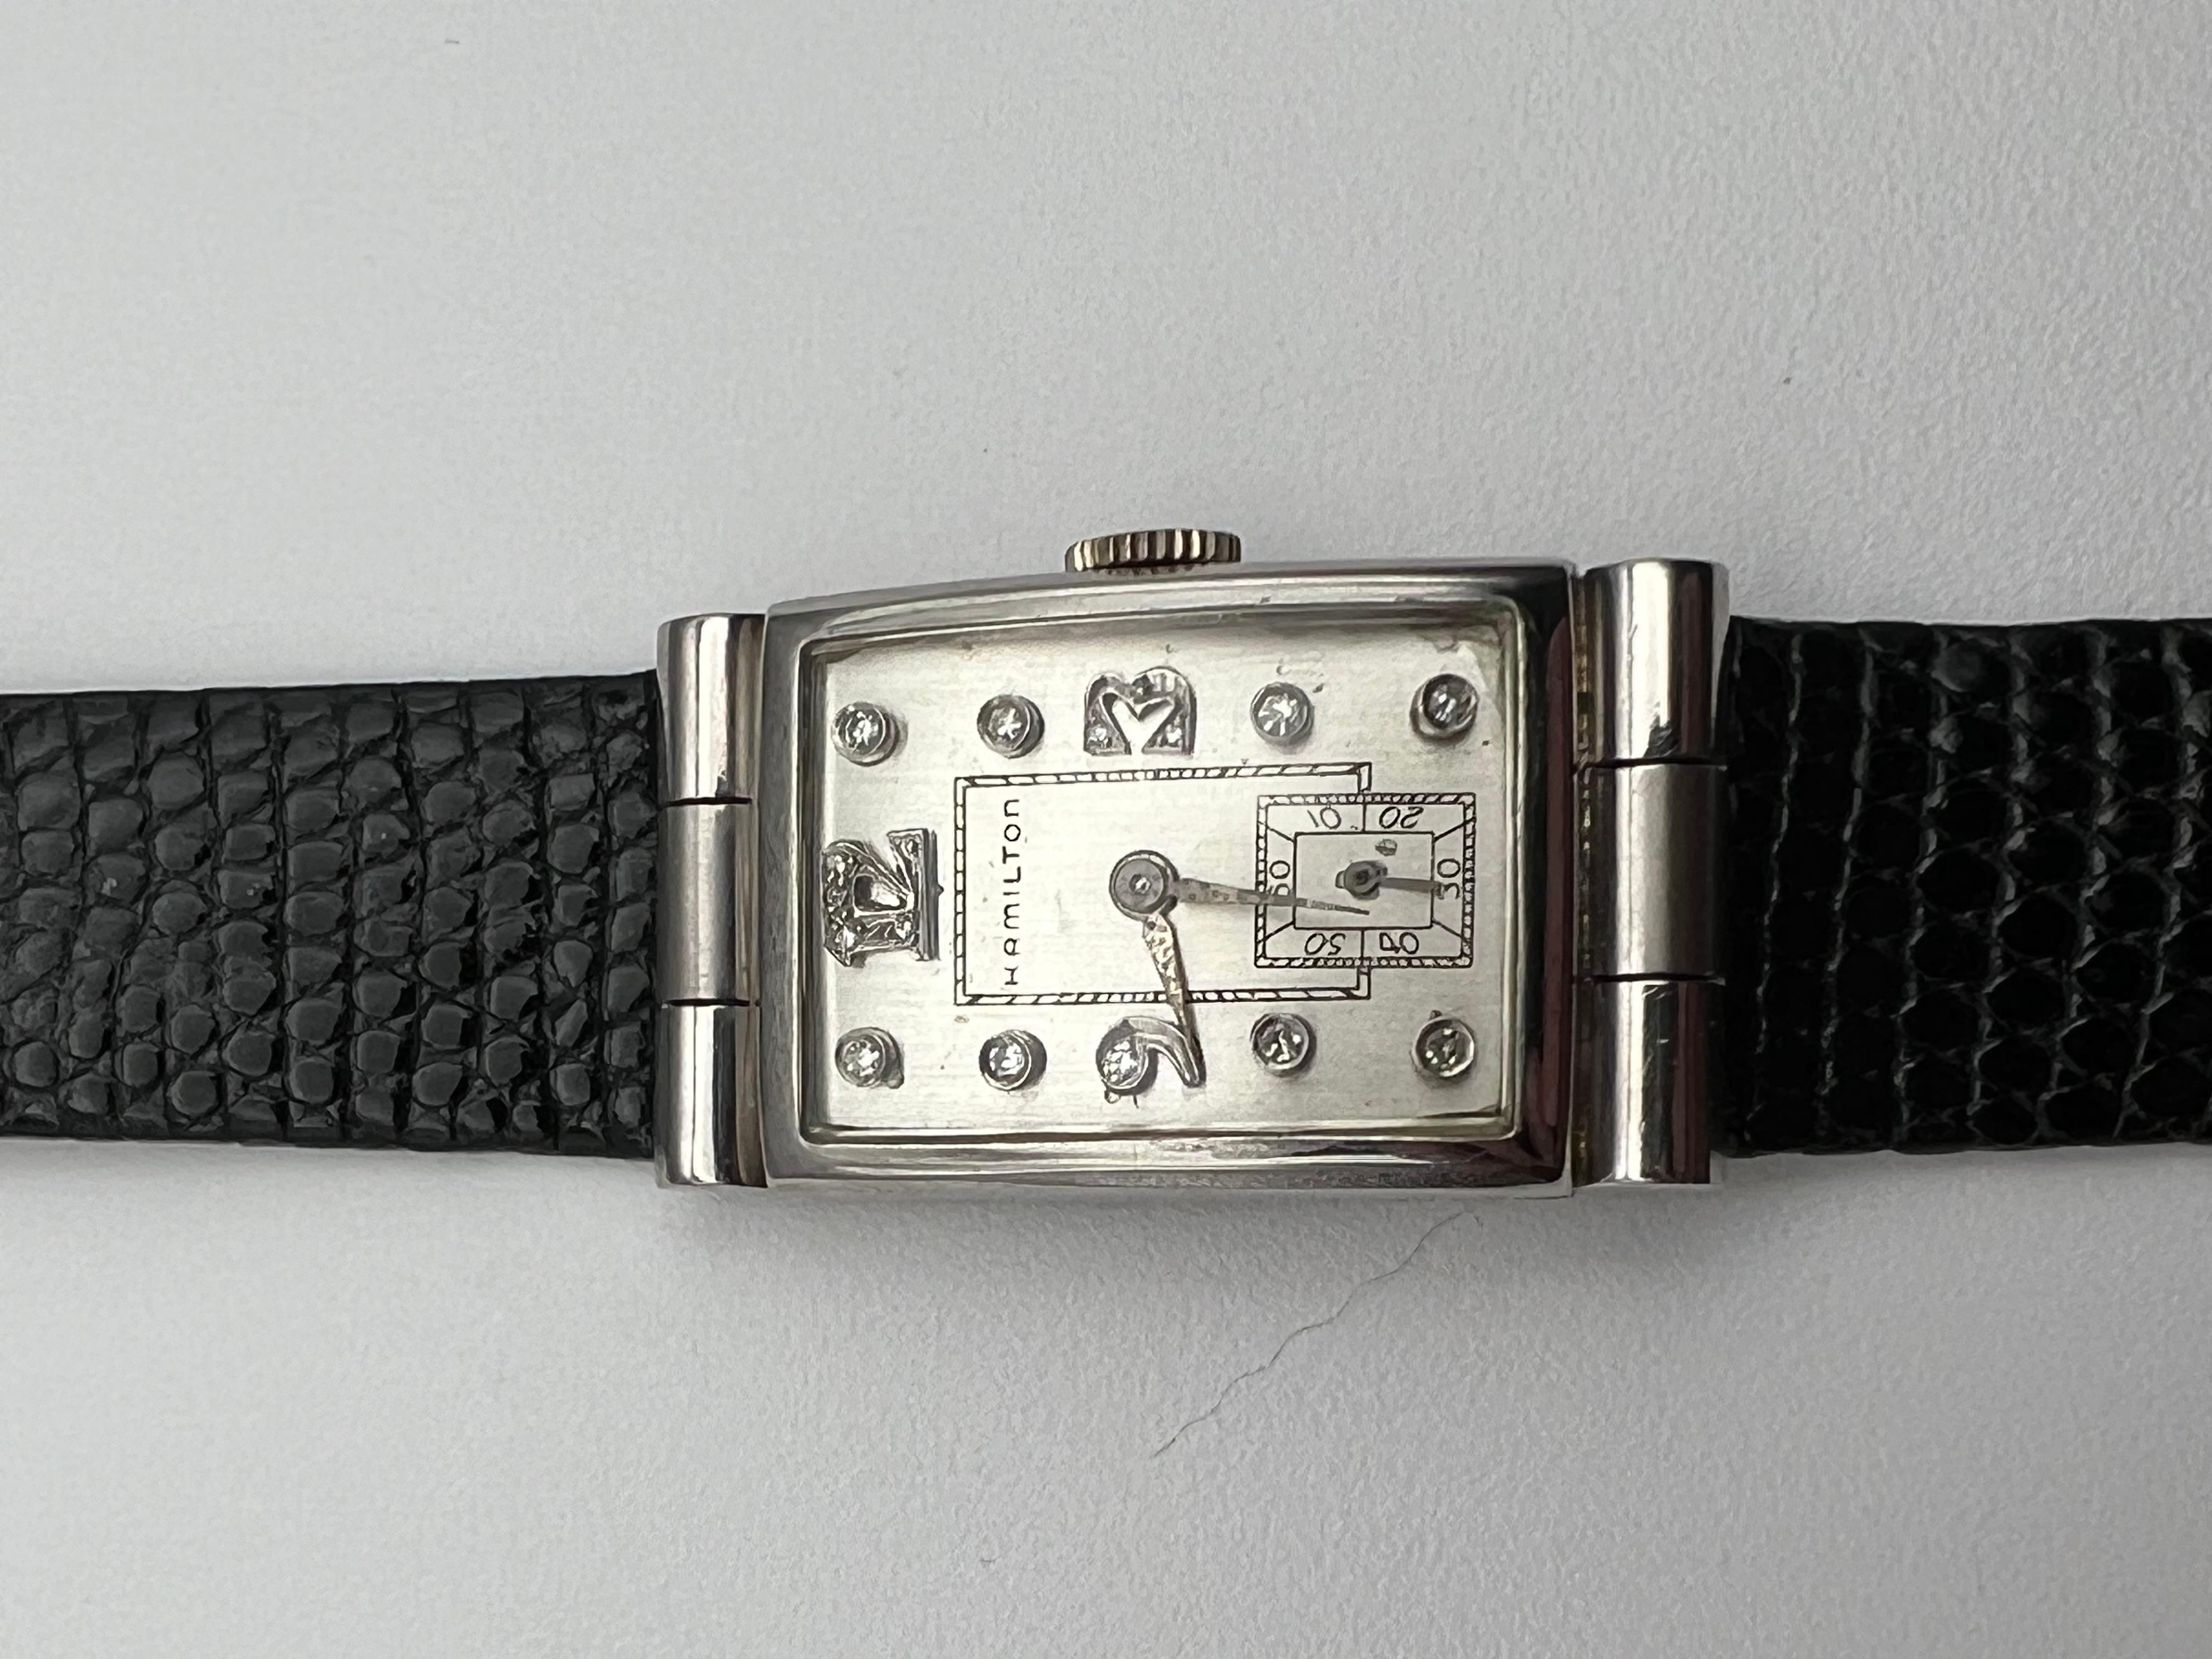 Willkommen in der Ecke für Vintage-Uhren, wo man die ungewöhnlichsten Zeitmesser finden kann, die mit Sicherheit Geschichten erzählen, die nie enthüllt werden. Jeder schaut auf Ihre Uhr und sie repräsentiert Ihre Persönlichkeit, Ihre Werte und Ihren